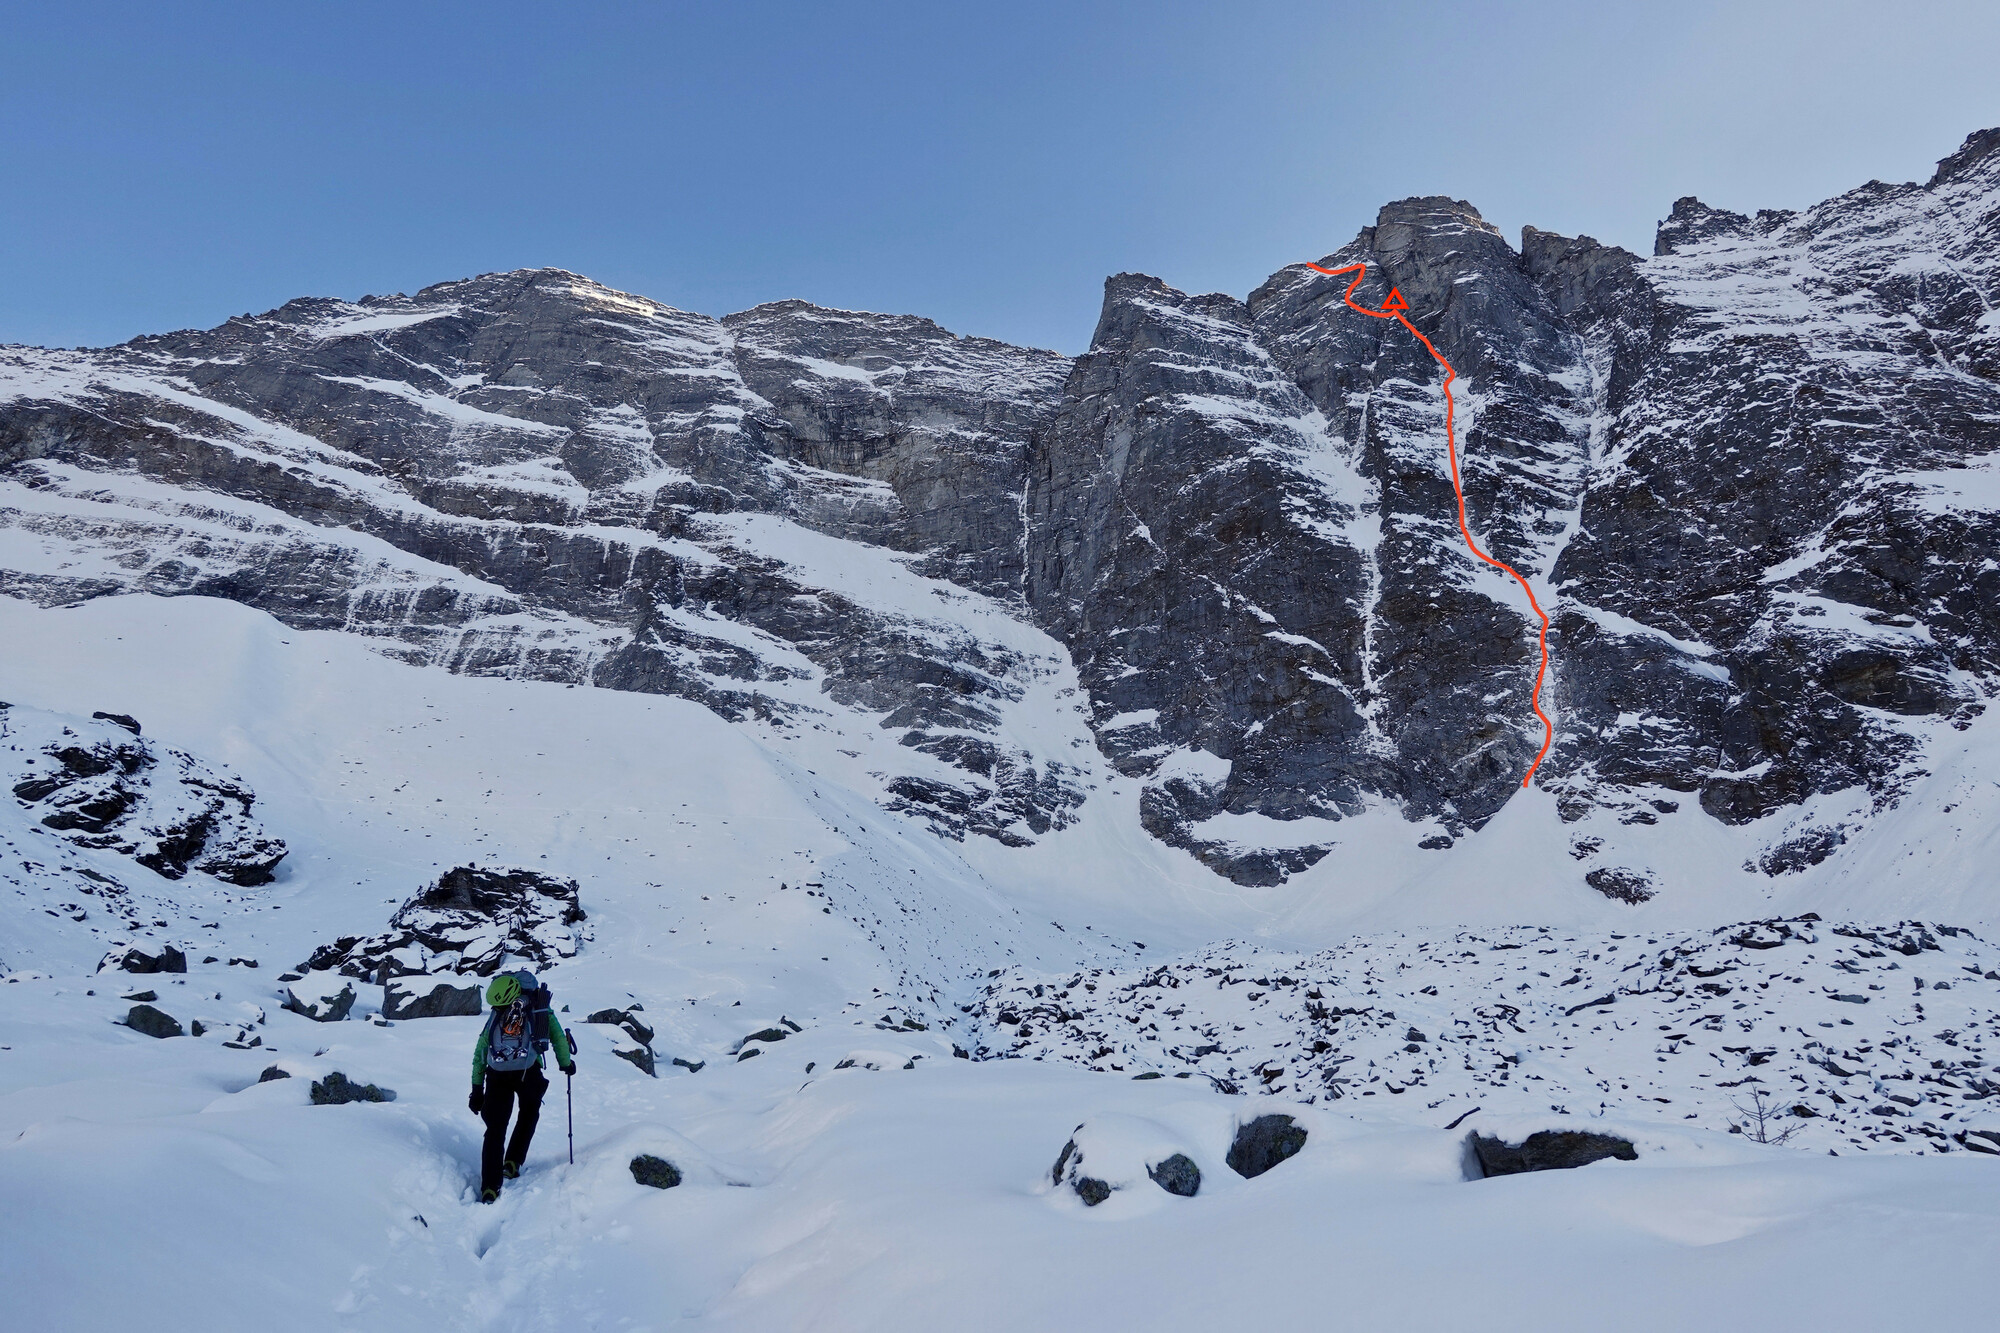 Lindič und Papert gelingt Erstbegehung an der Sagwandspitze Nordwand